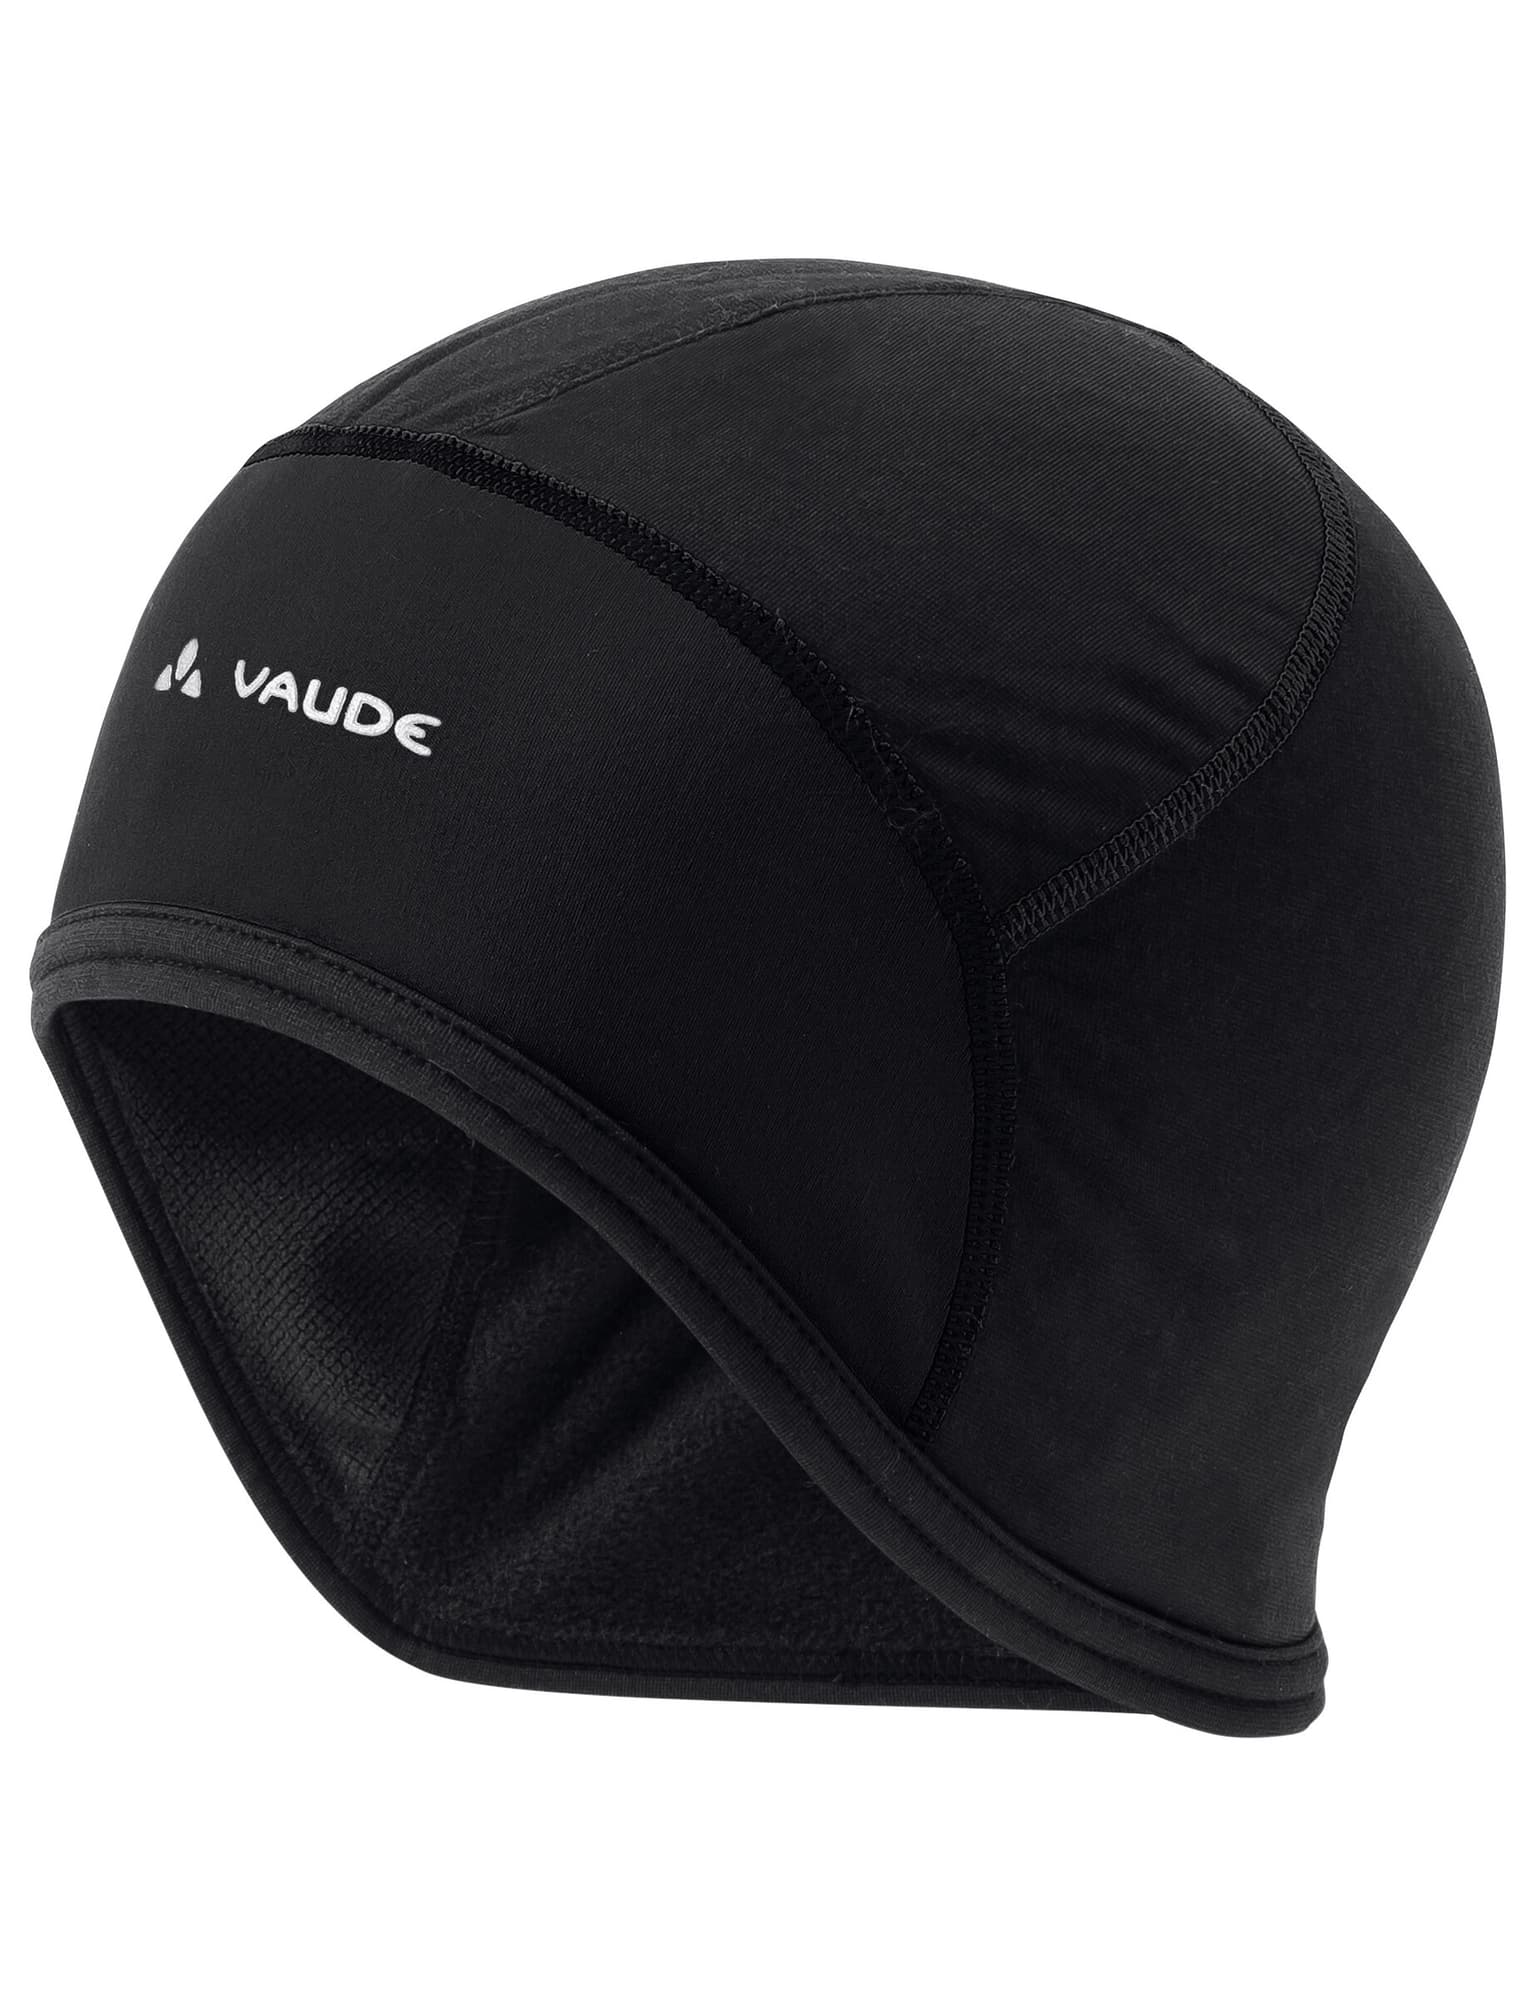 Vaude Vaude Mütze Bike-Mütze schwarz 1